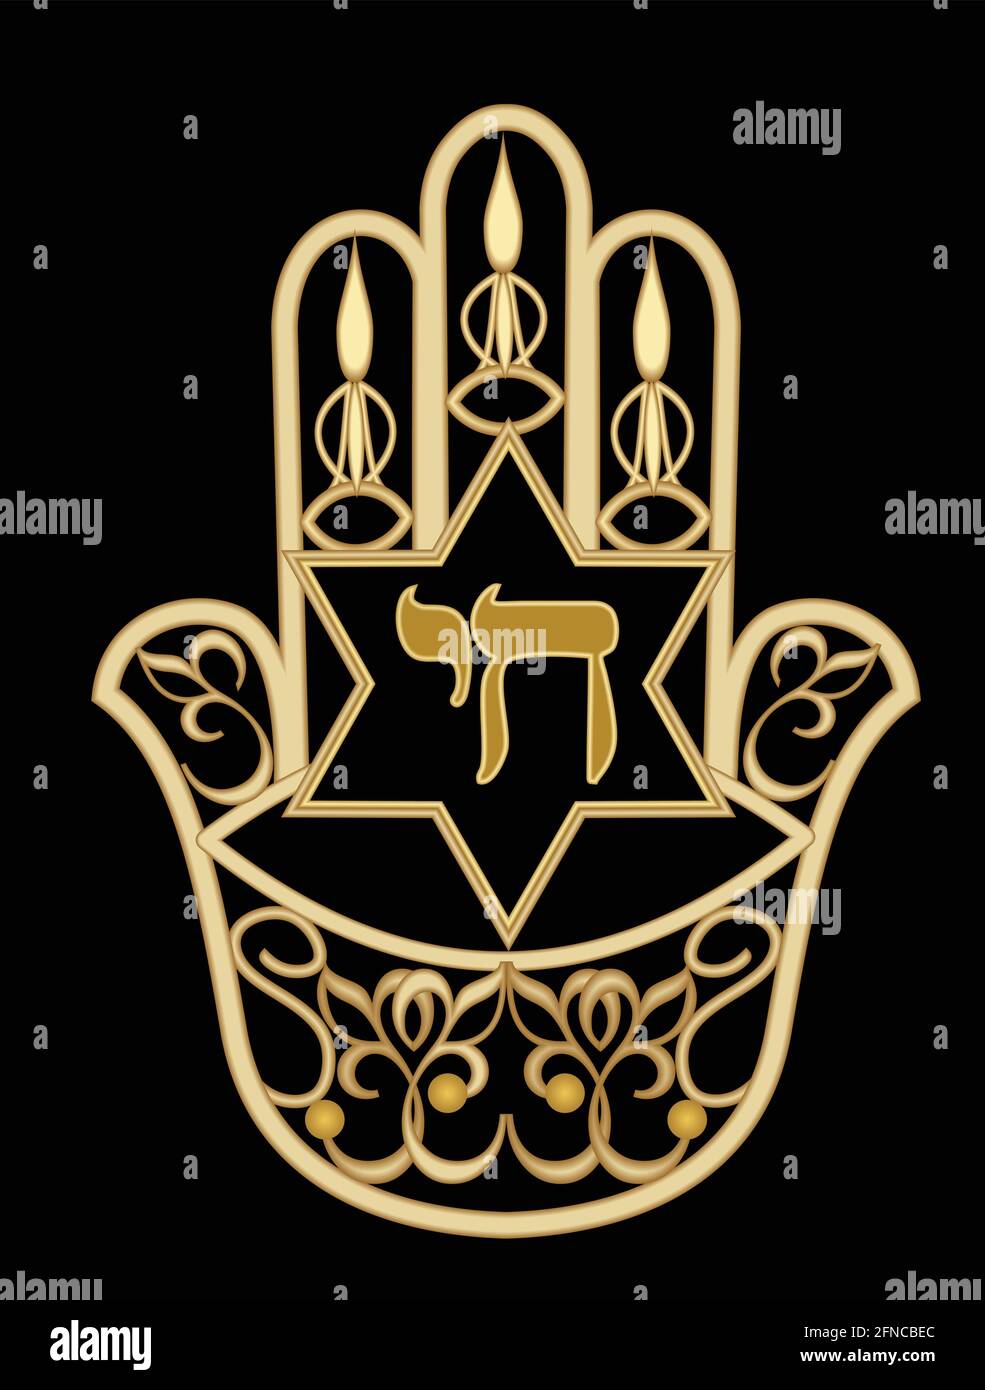 Miriam mano simbolo hamsa. Design d'oro con stella di David e parola ebraica chai che significa vita. Gioiello d'oro filigrana con elementi ebraici, Vector EPS 10 Illustrazione Vettoriale